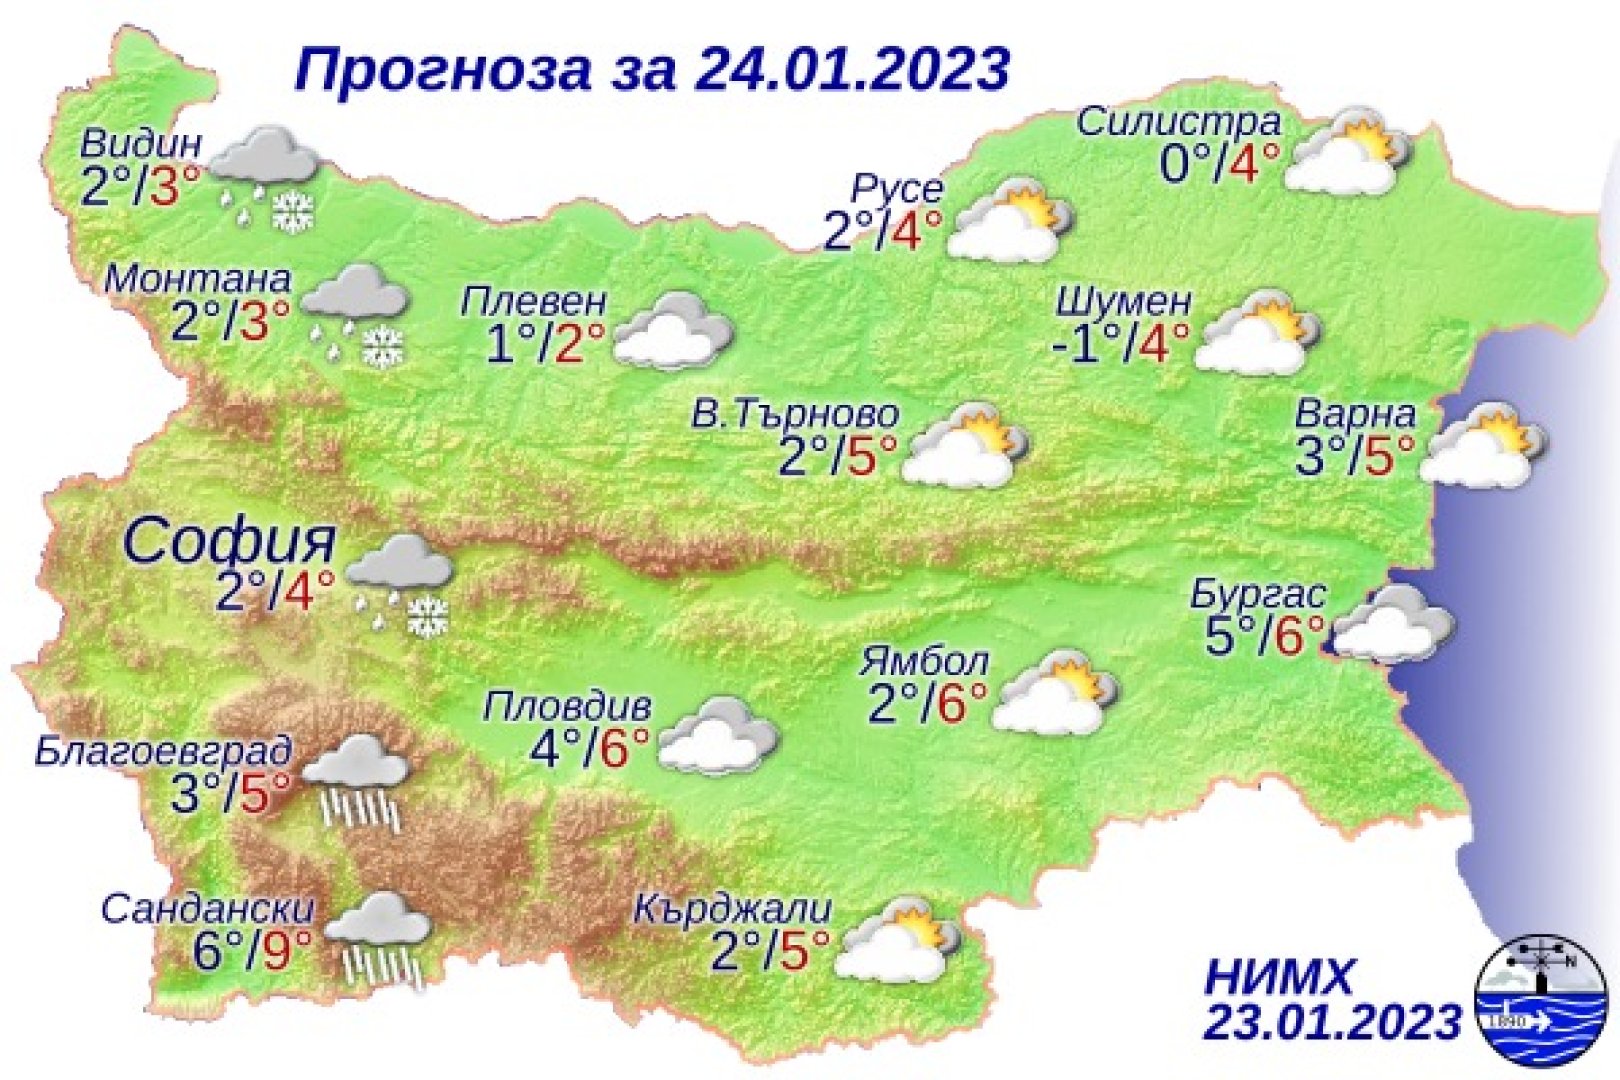 Над Черноморието ще е предимно облачно, на отделни места е възможно да преръми слабо. Графика НИХМ